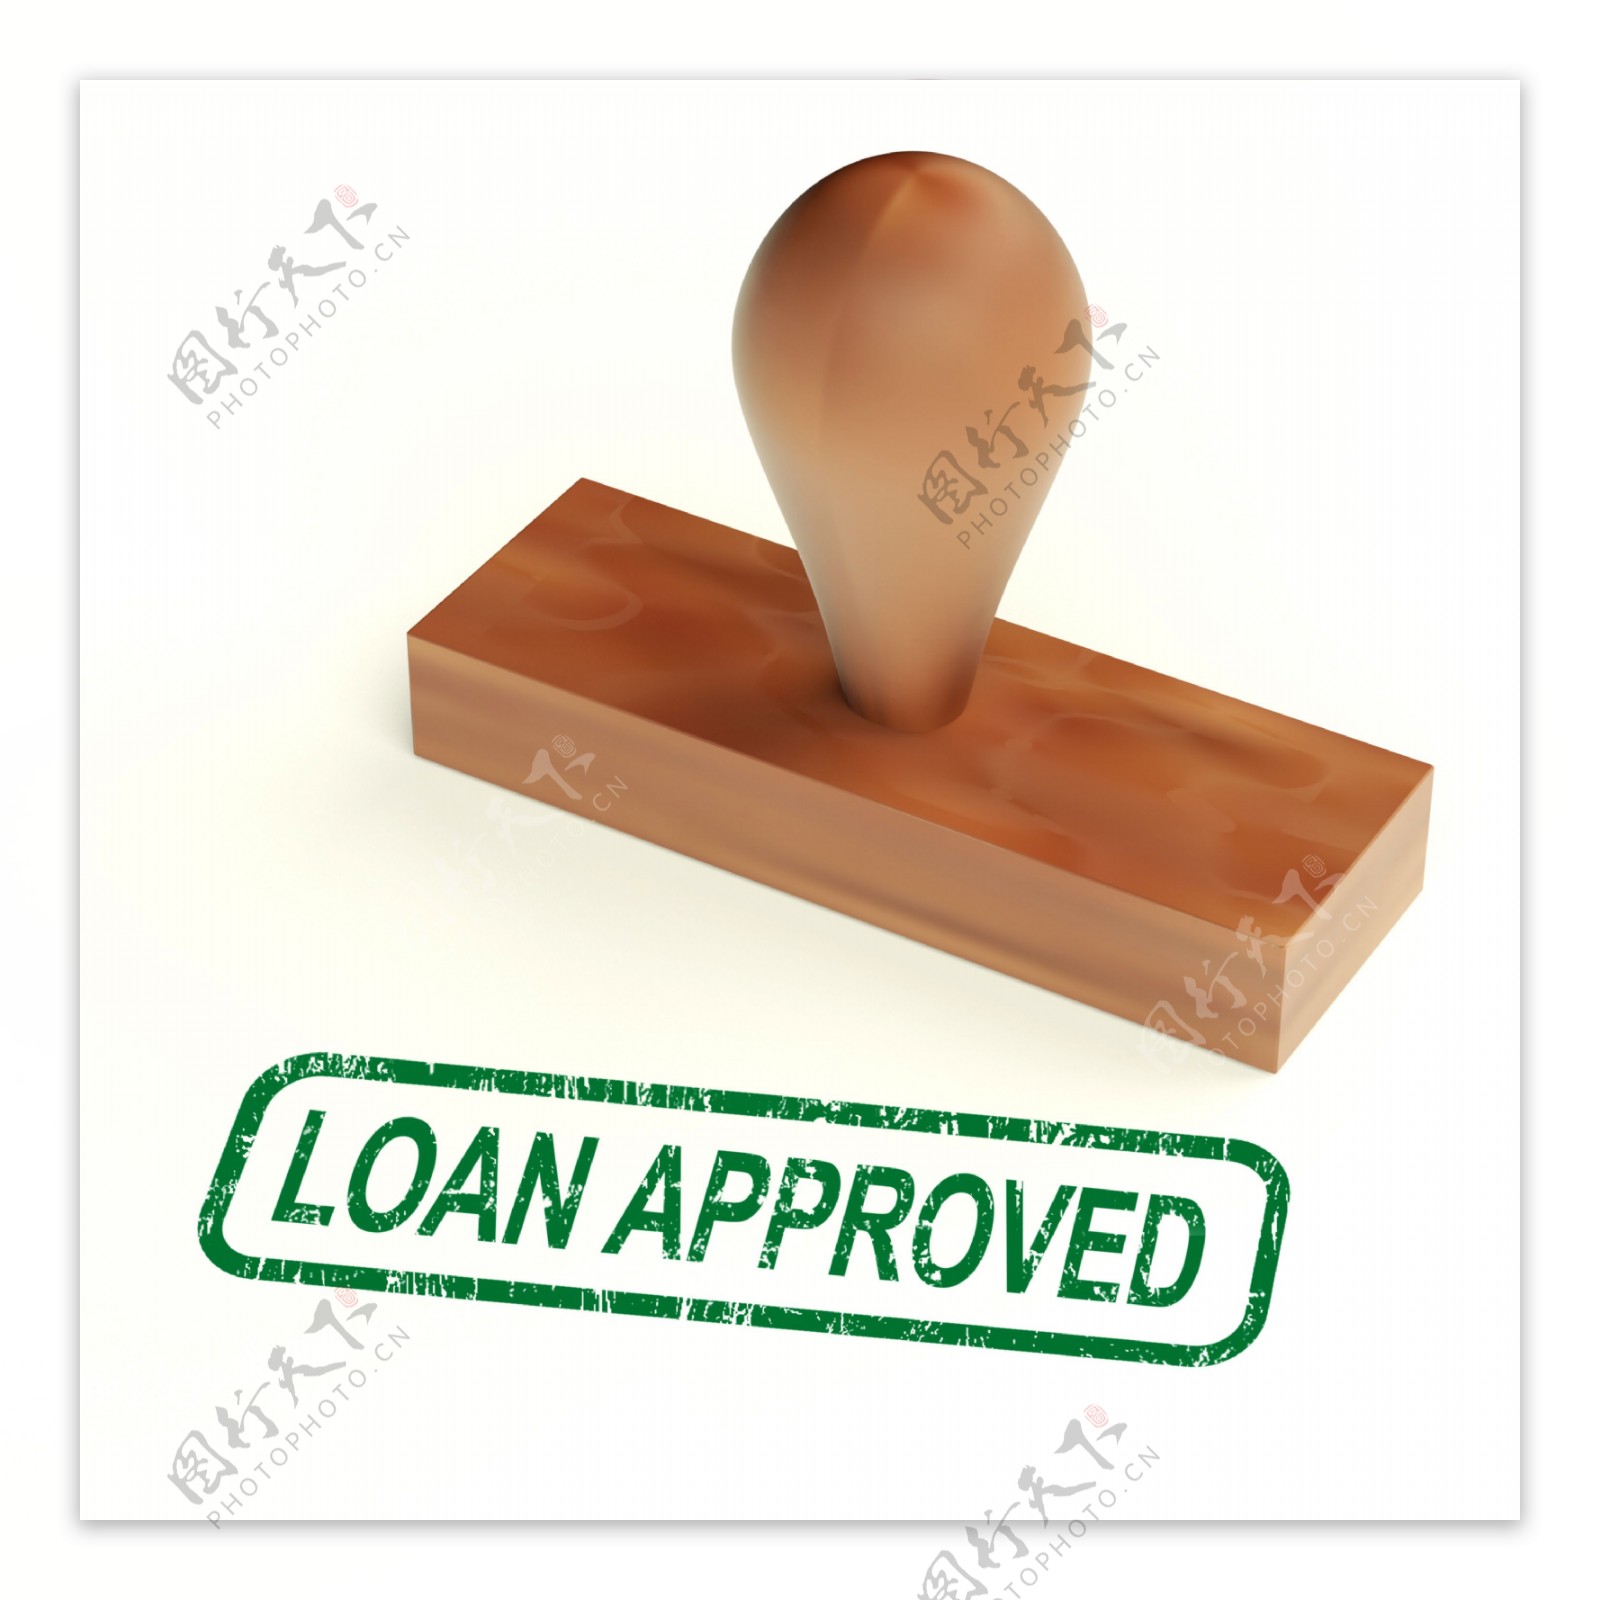 贷款批准的橡皮图章显示信用借款好